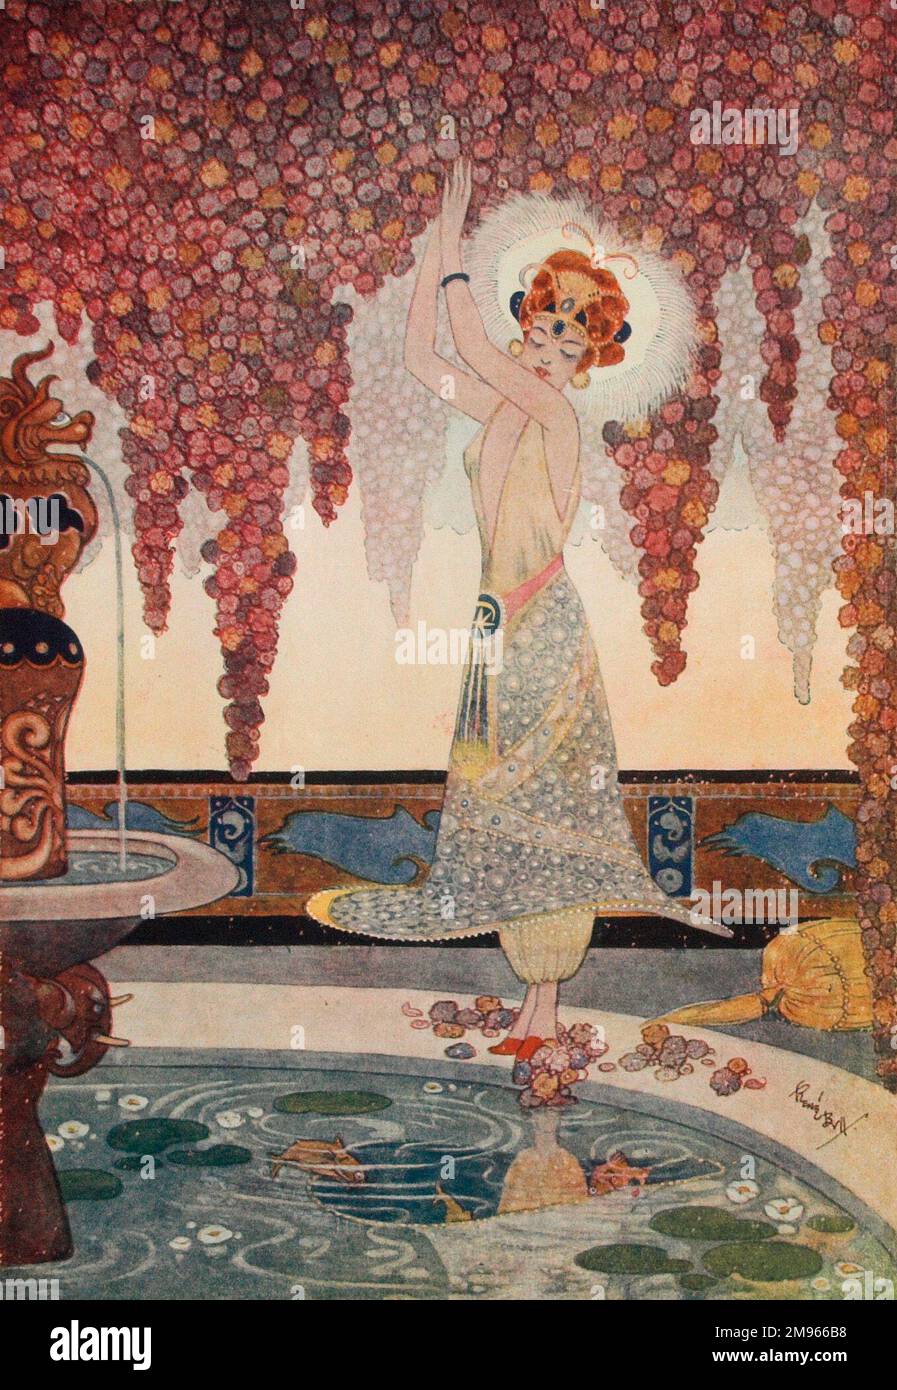 Un'illustrazione stilizzata di Rene Bull (1872-1942) che mostra una ballerina esotica con un rivestimento scantly in un bel giardino appeso alla frutta. Bull aveva viaggiato in Medio Oriente e qui si esprime l'influenza dell'arte orientale e delle usanze arabe. Foto Stock